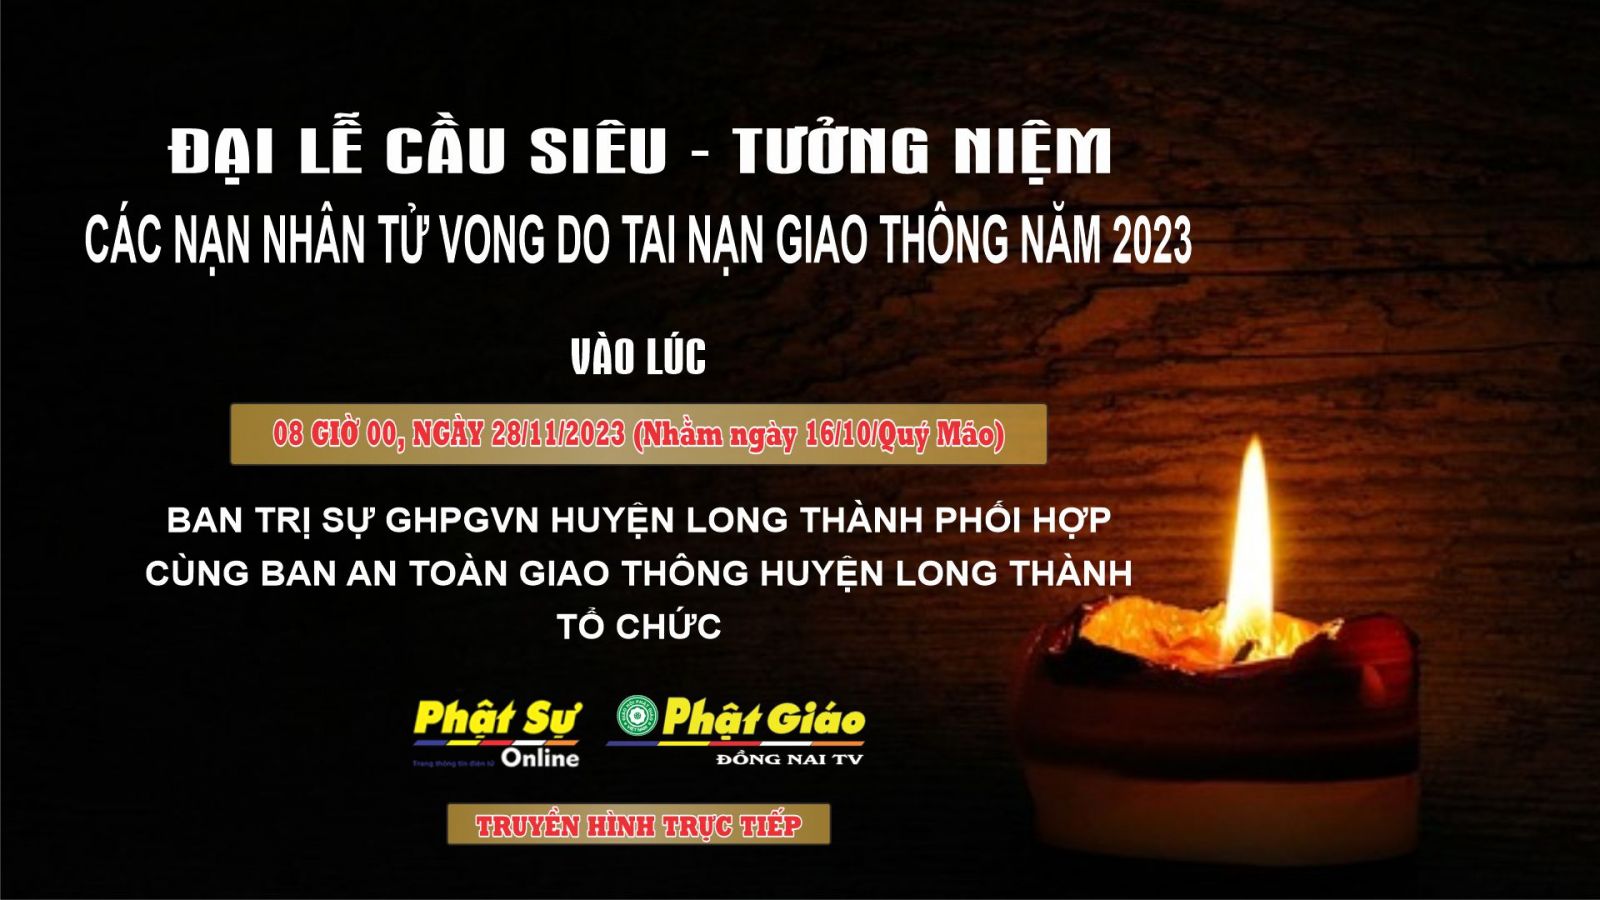 Trực tiếp: Ban Trị sự H. Long Thành tổ chức Đại lễ Cầu siêu các nạn nhân tử vong do TNGT - năm 2023